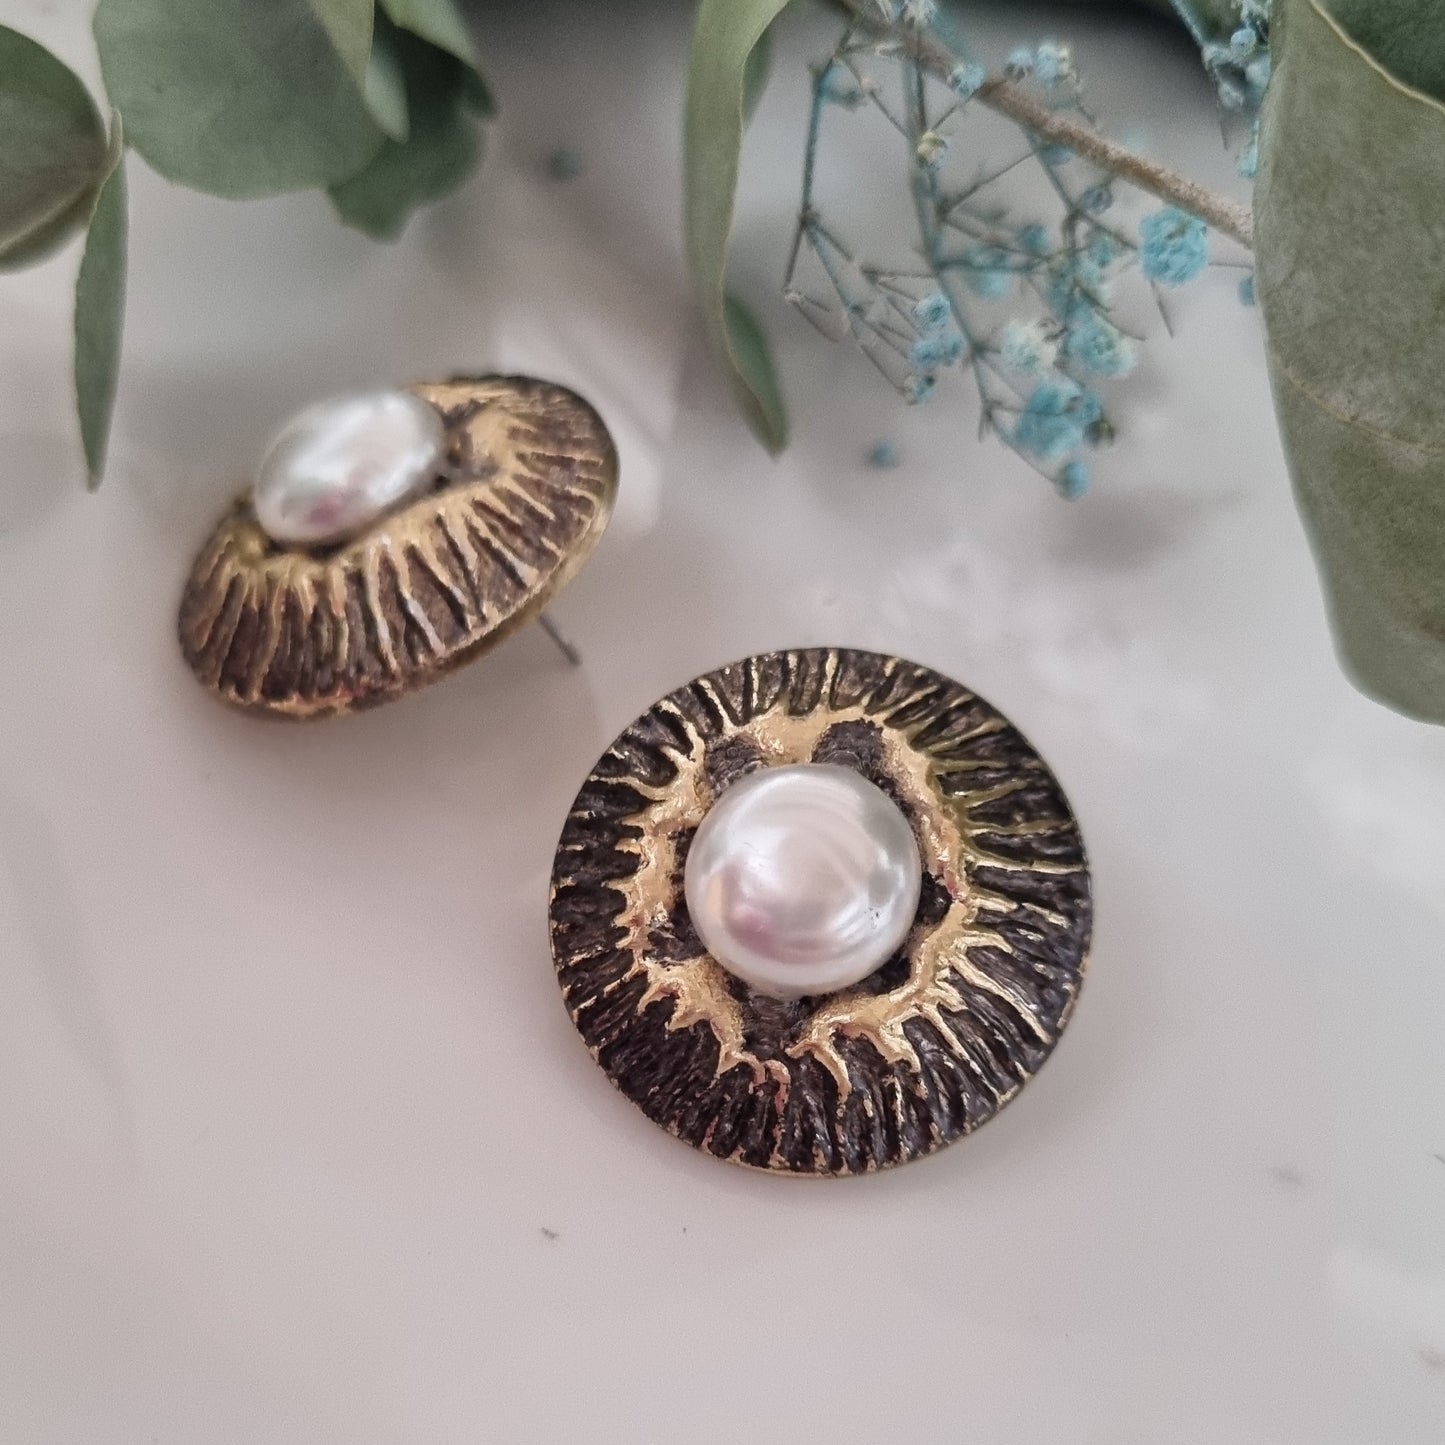 Vintage earrings - Antique/pearl